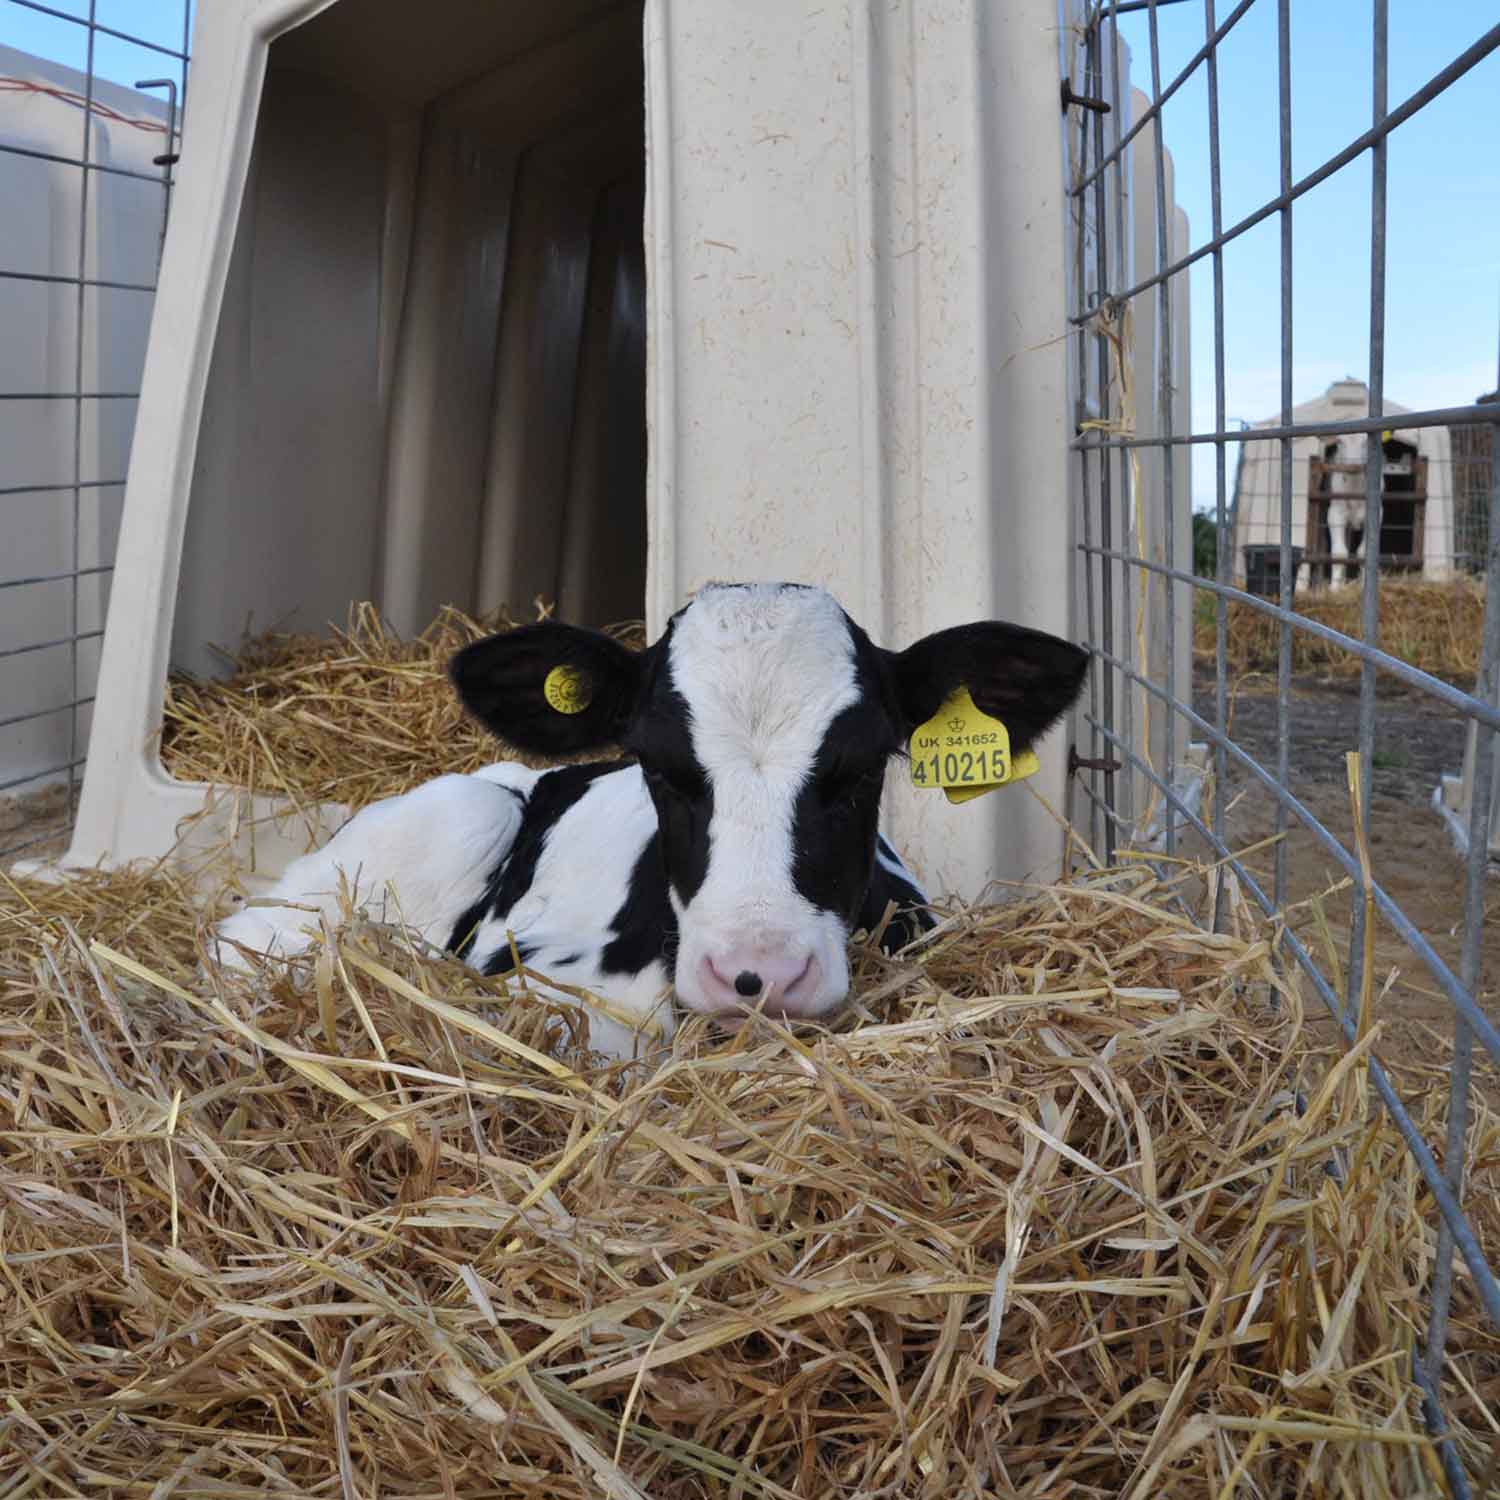 Calf on factory farm